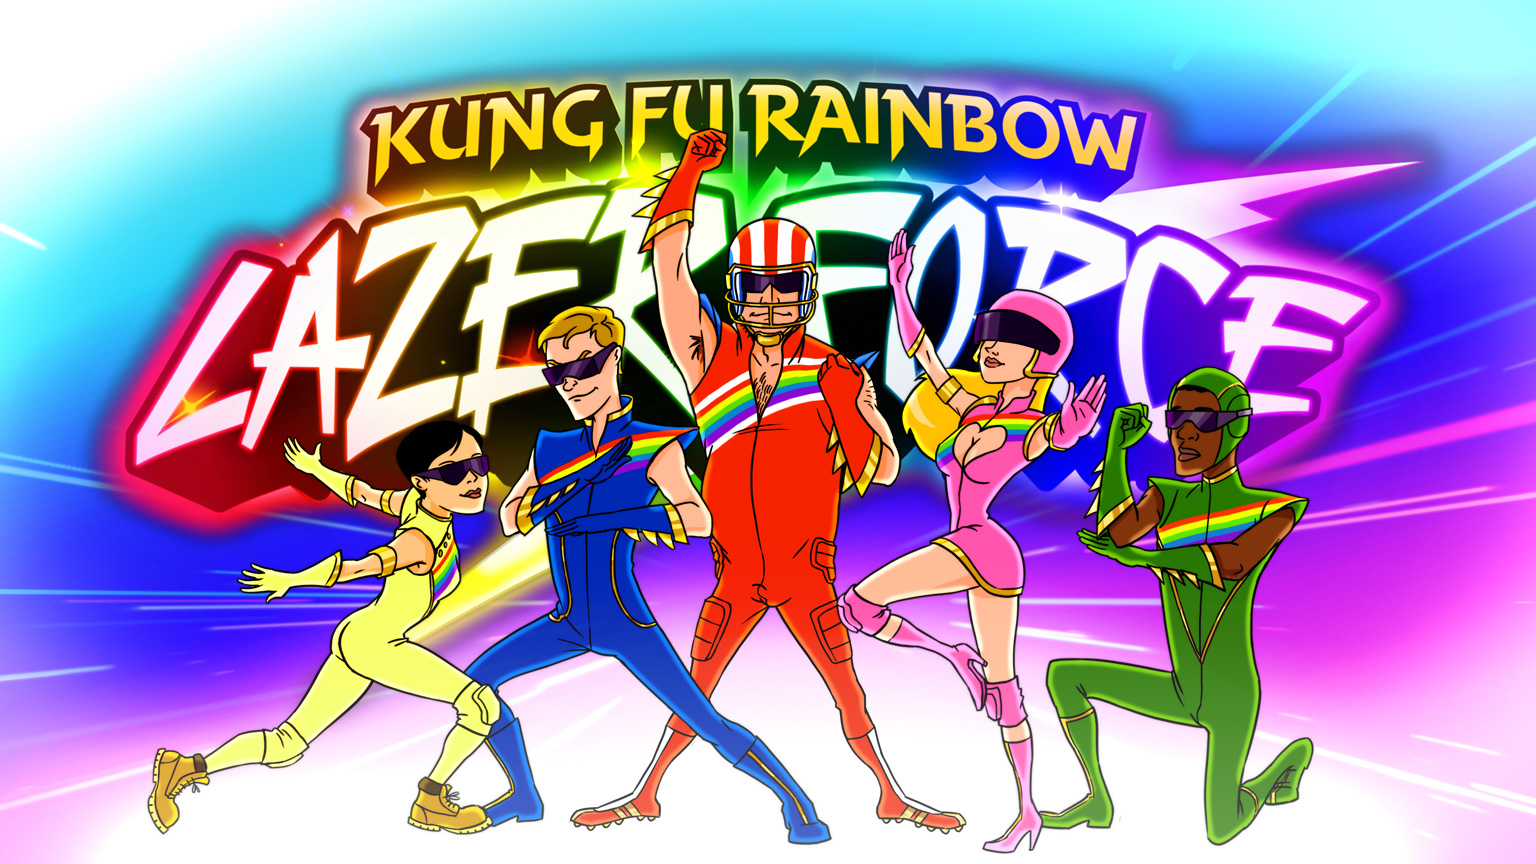 Gta 5 kung fu rainbow (120) фото